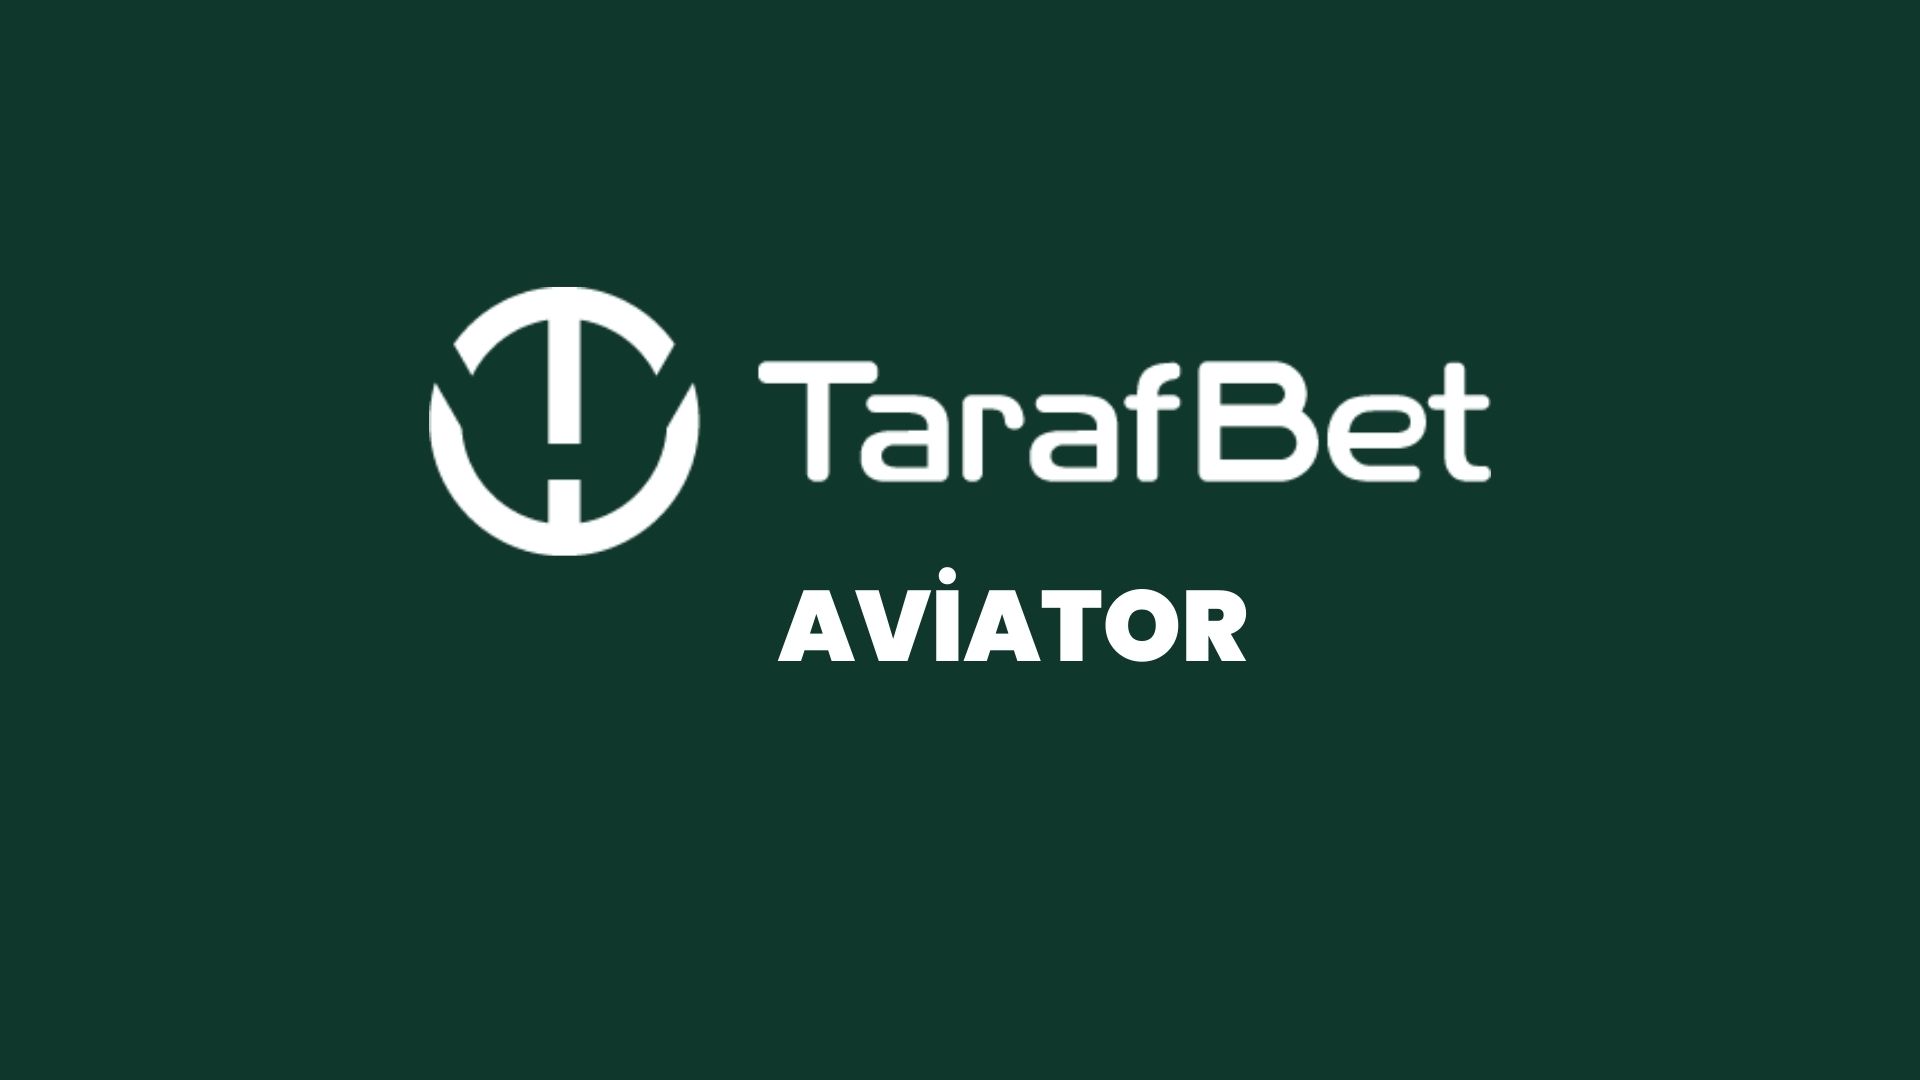 tarafbet-aviator